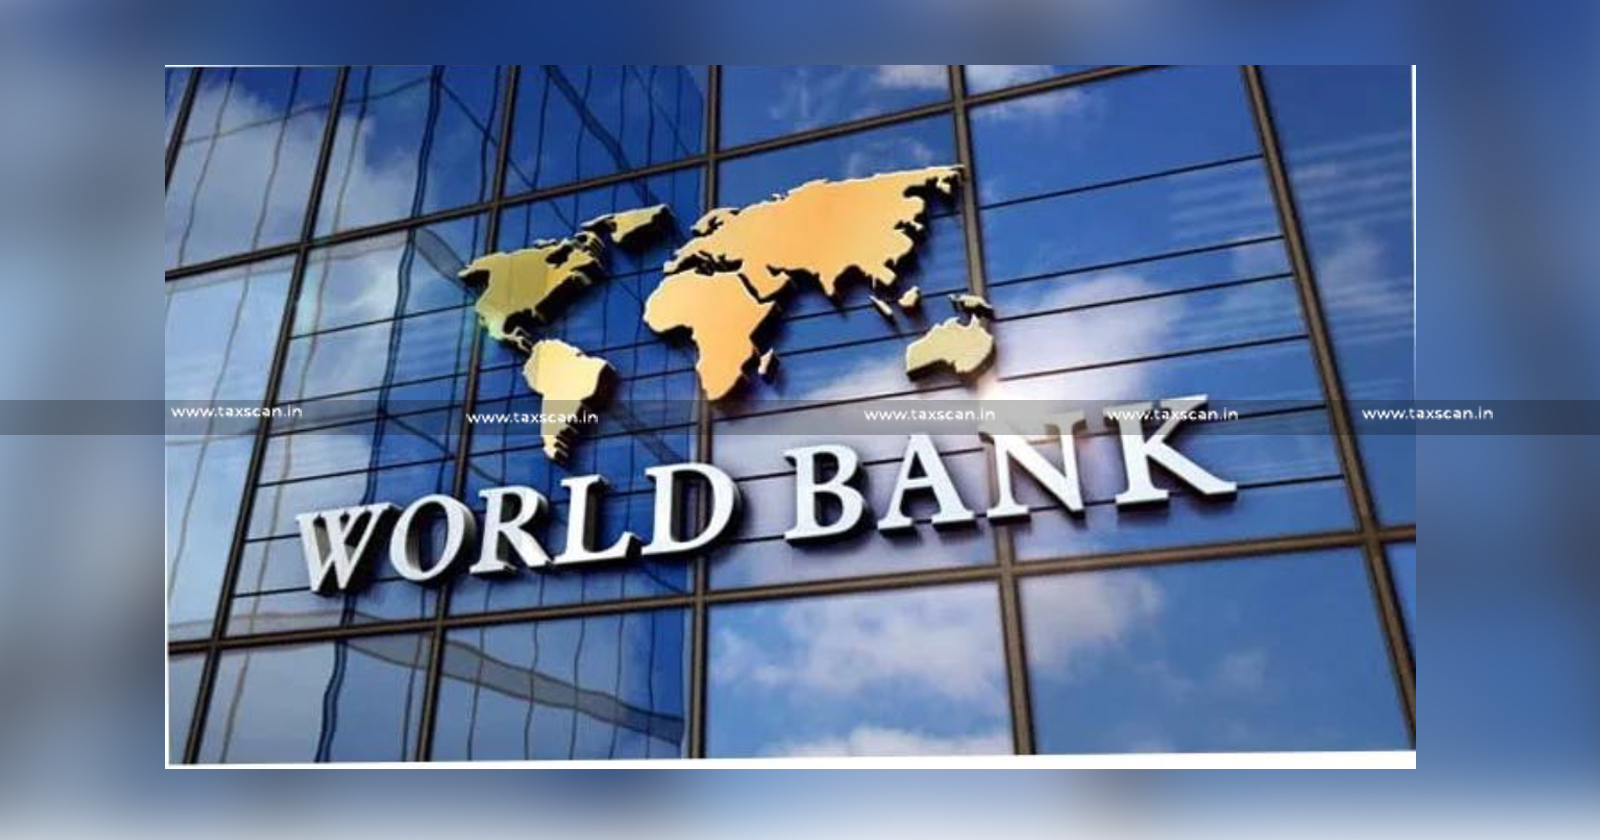 World Bank praises India's Progress - World Bank- Digital Public Infrastructure including UPI - UPI- Digital Public Infrastructure- G20 Document - taxscan